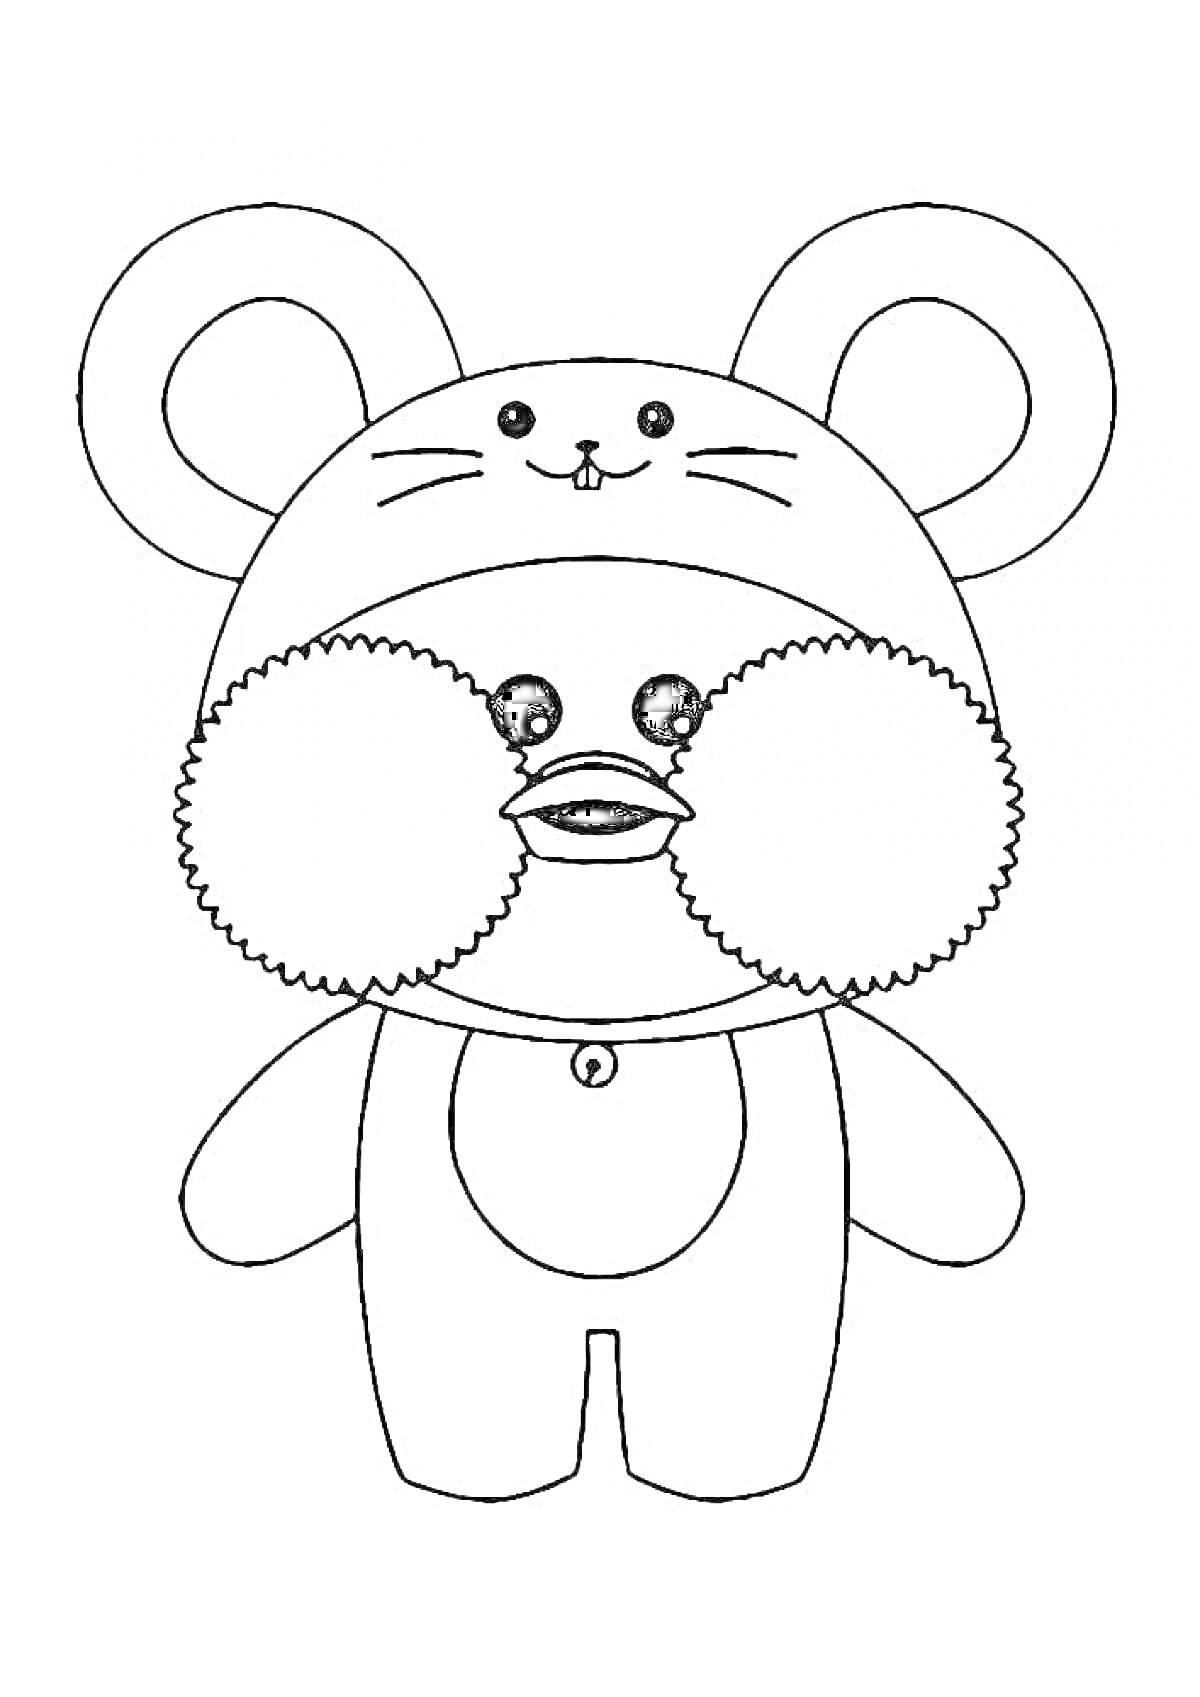 Раскраска Утя Лалафан в костюме мышки с большими щеками и шапкой в виде мышинной головы